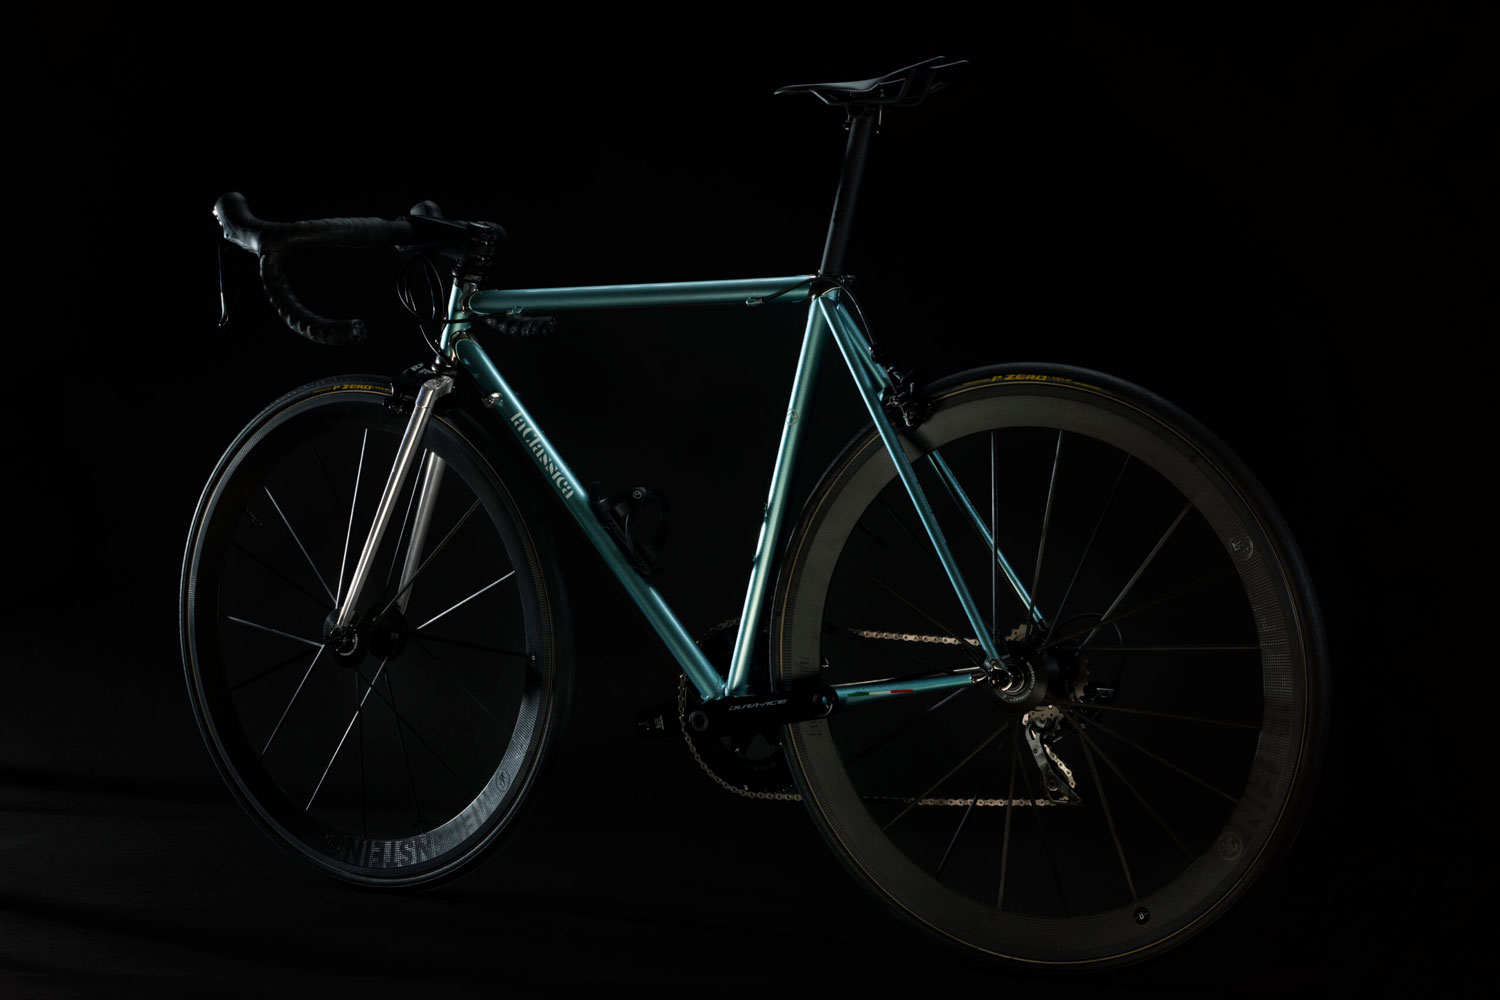 Bicicletta Officine Mattio modello CLASISCA, telaio in acciaio, passione e attualità, fotografia dettaglio laterale